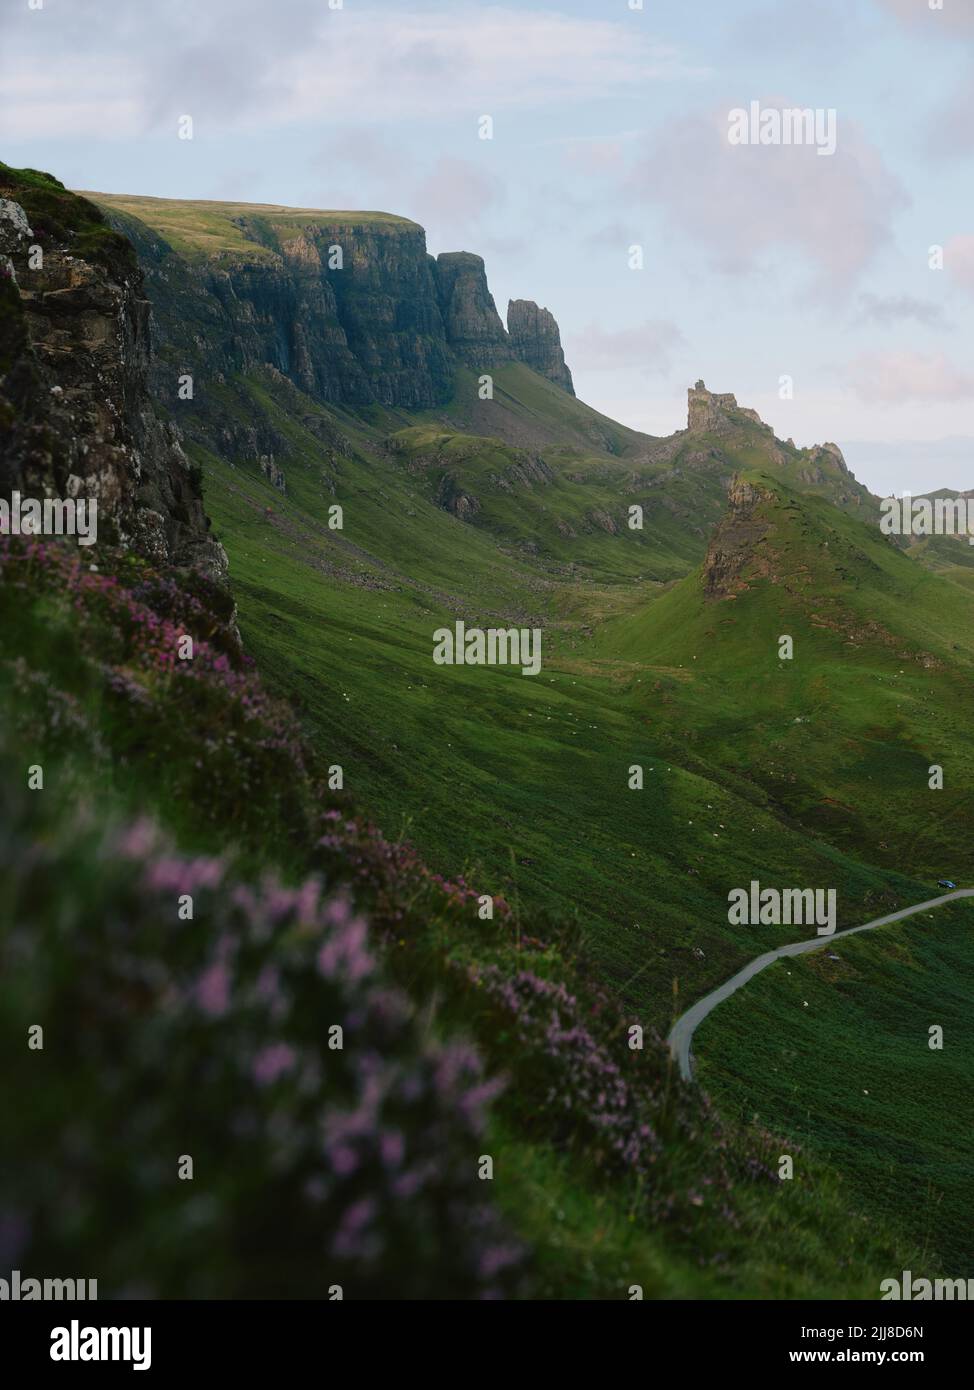 El corrimiento de tierra de Quiraing, cara oriental de Meall na Suiramach, cumbre más al norte de la cordillera Trotternish, isla de Skye, Escocia - paisaje de verano Foto de stock